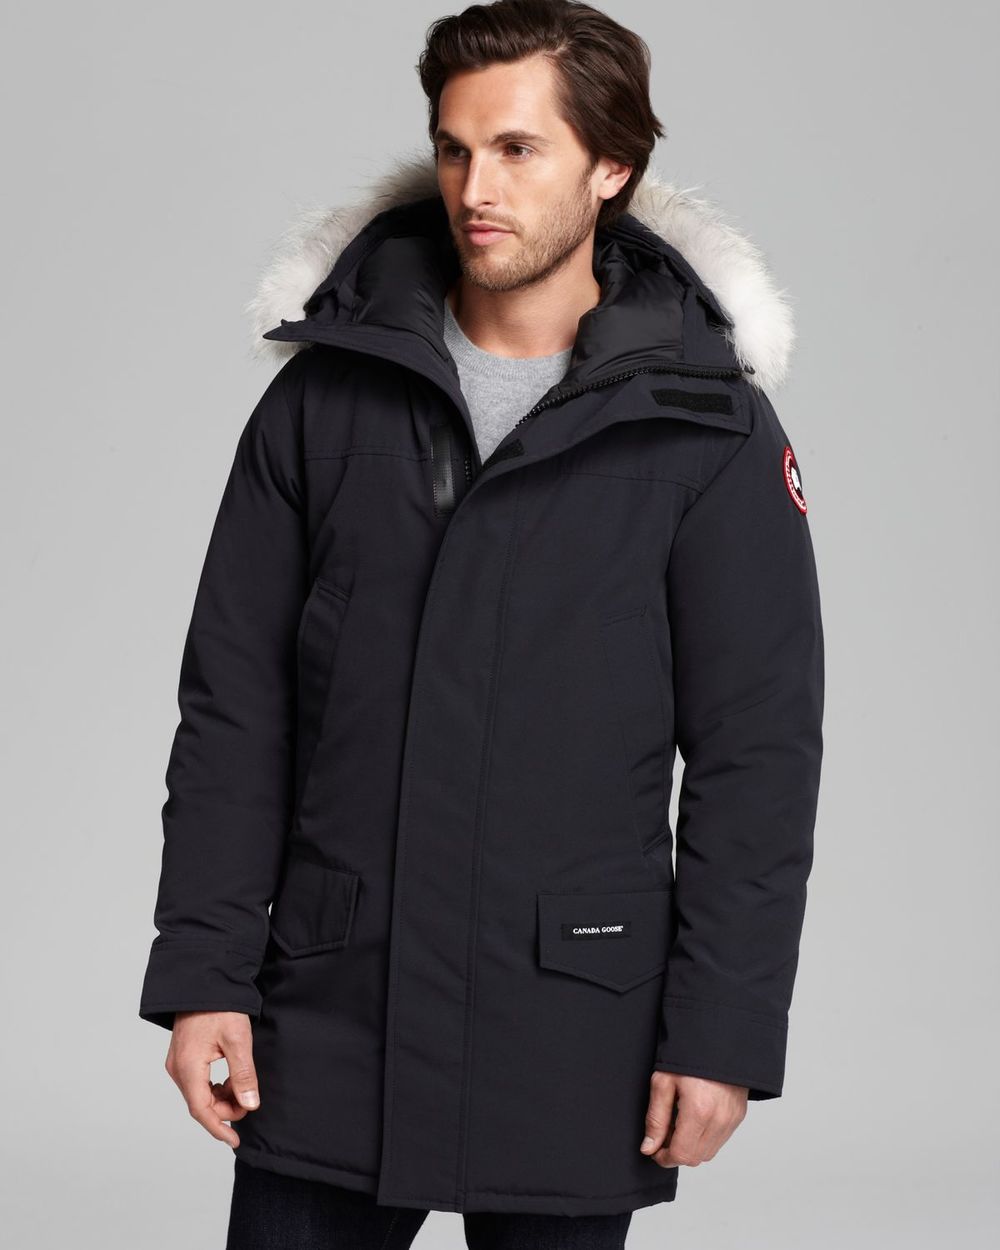 image canada goose jacket price in canada de